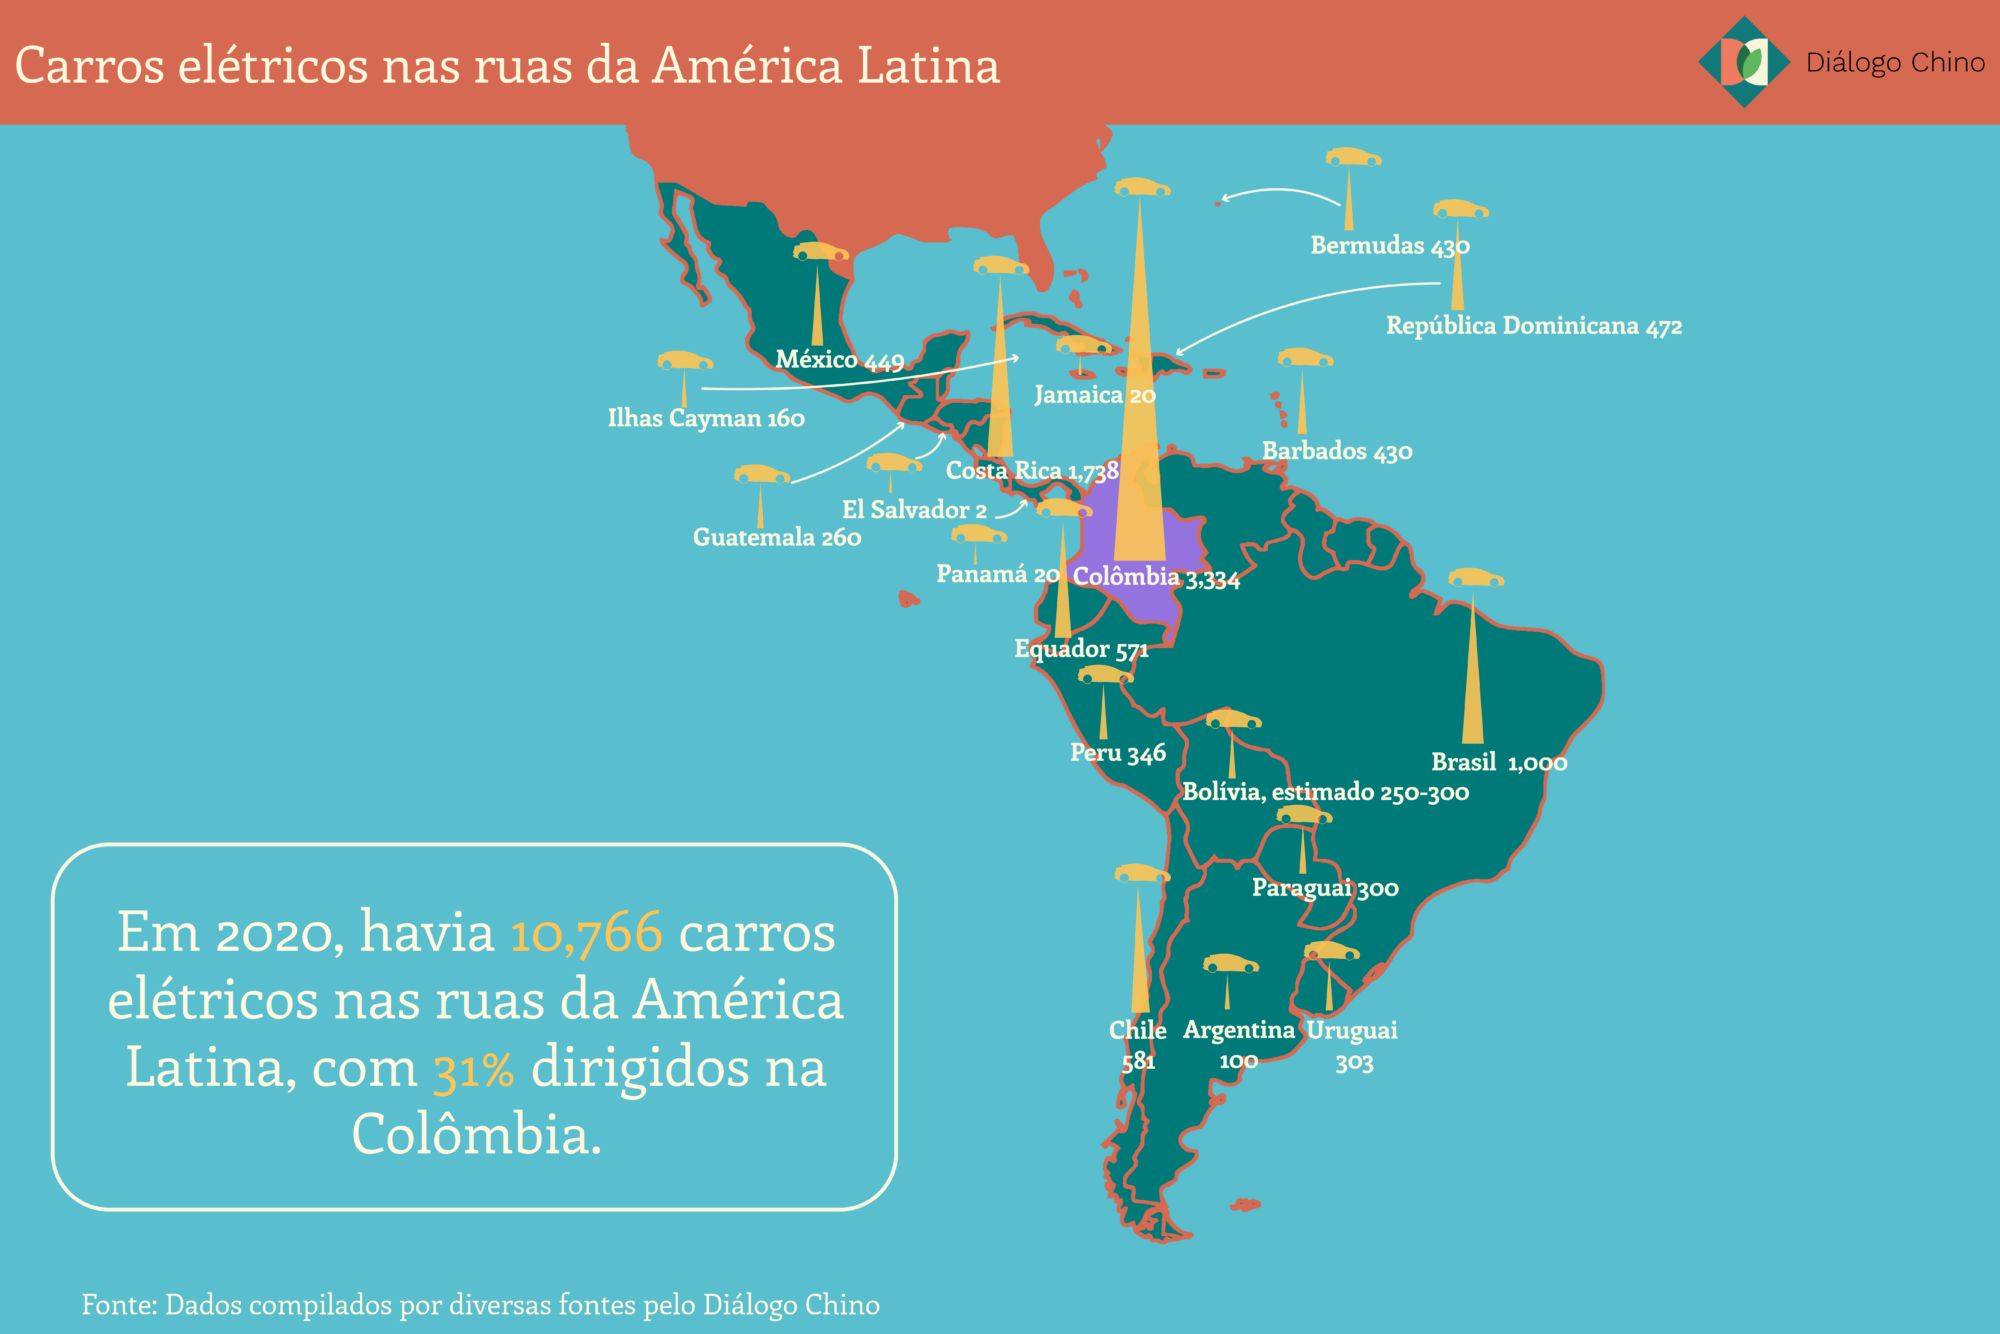 Mapa ilustrativo da distribuição de carros elétricos na América Latina. 